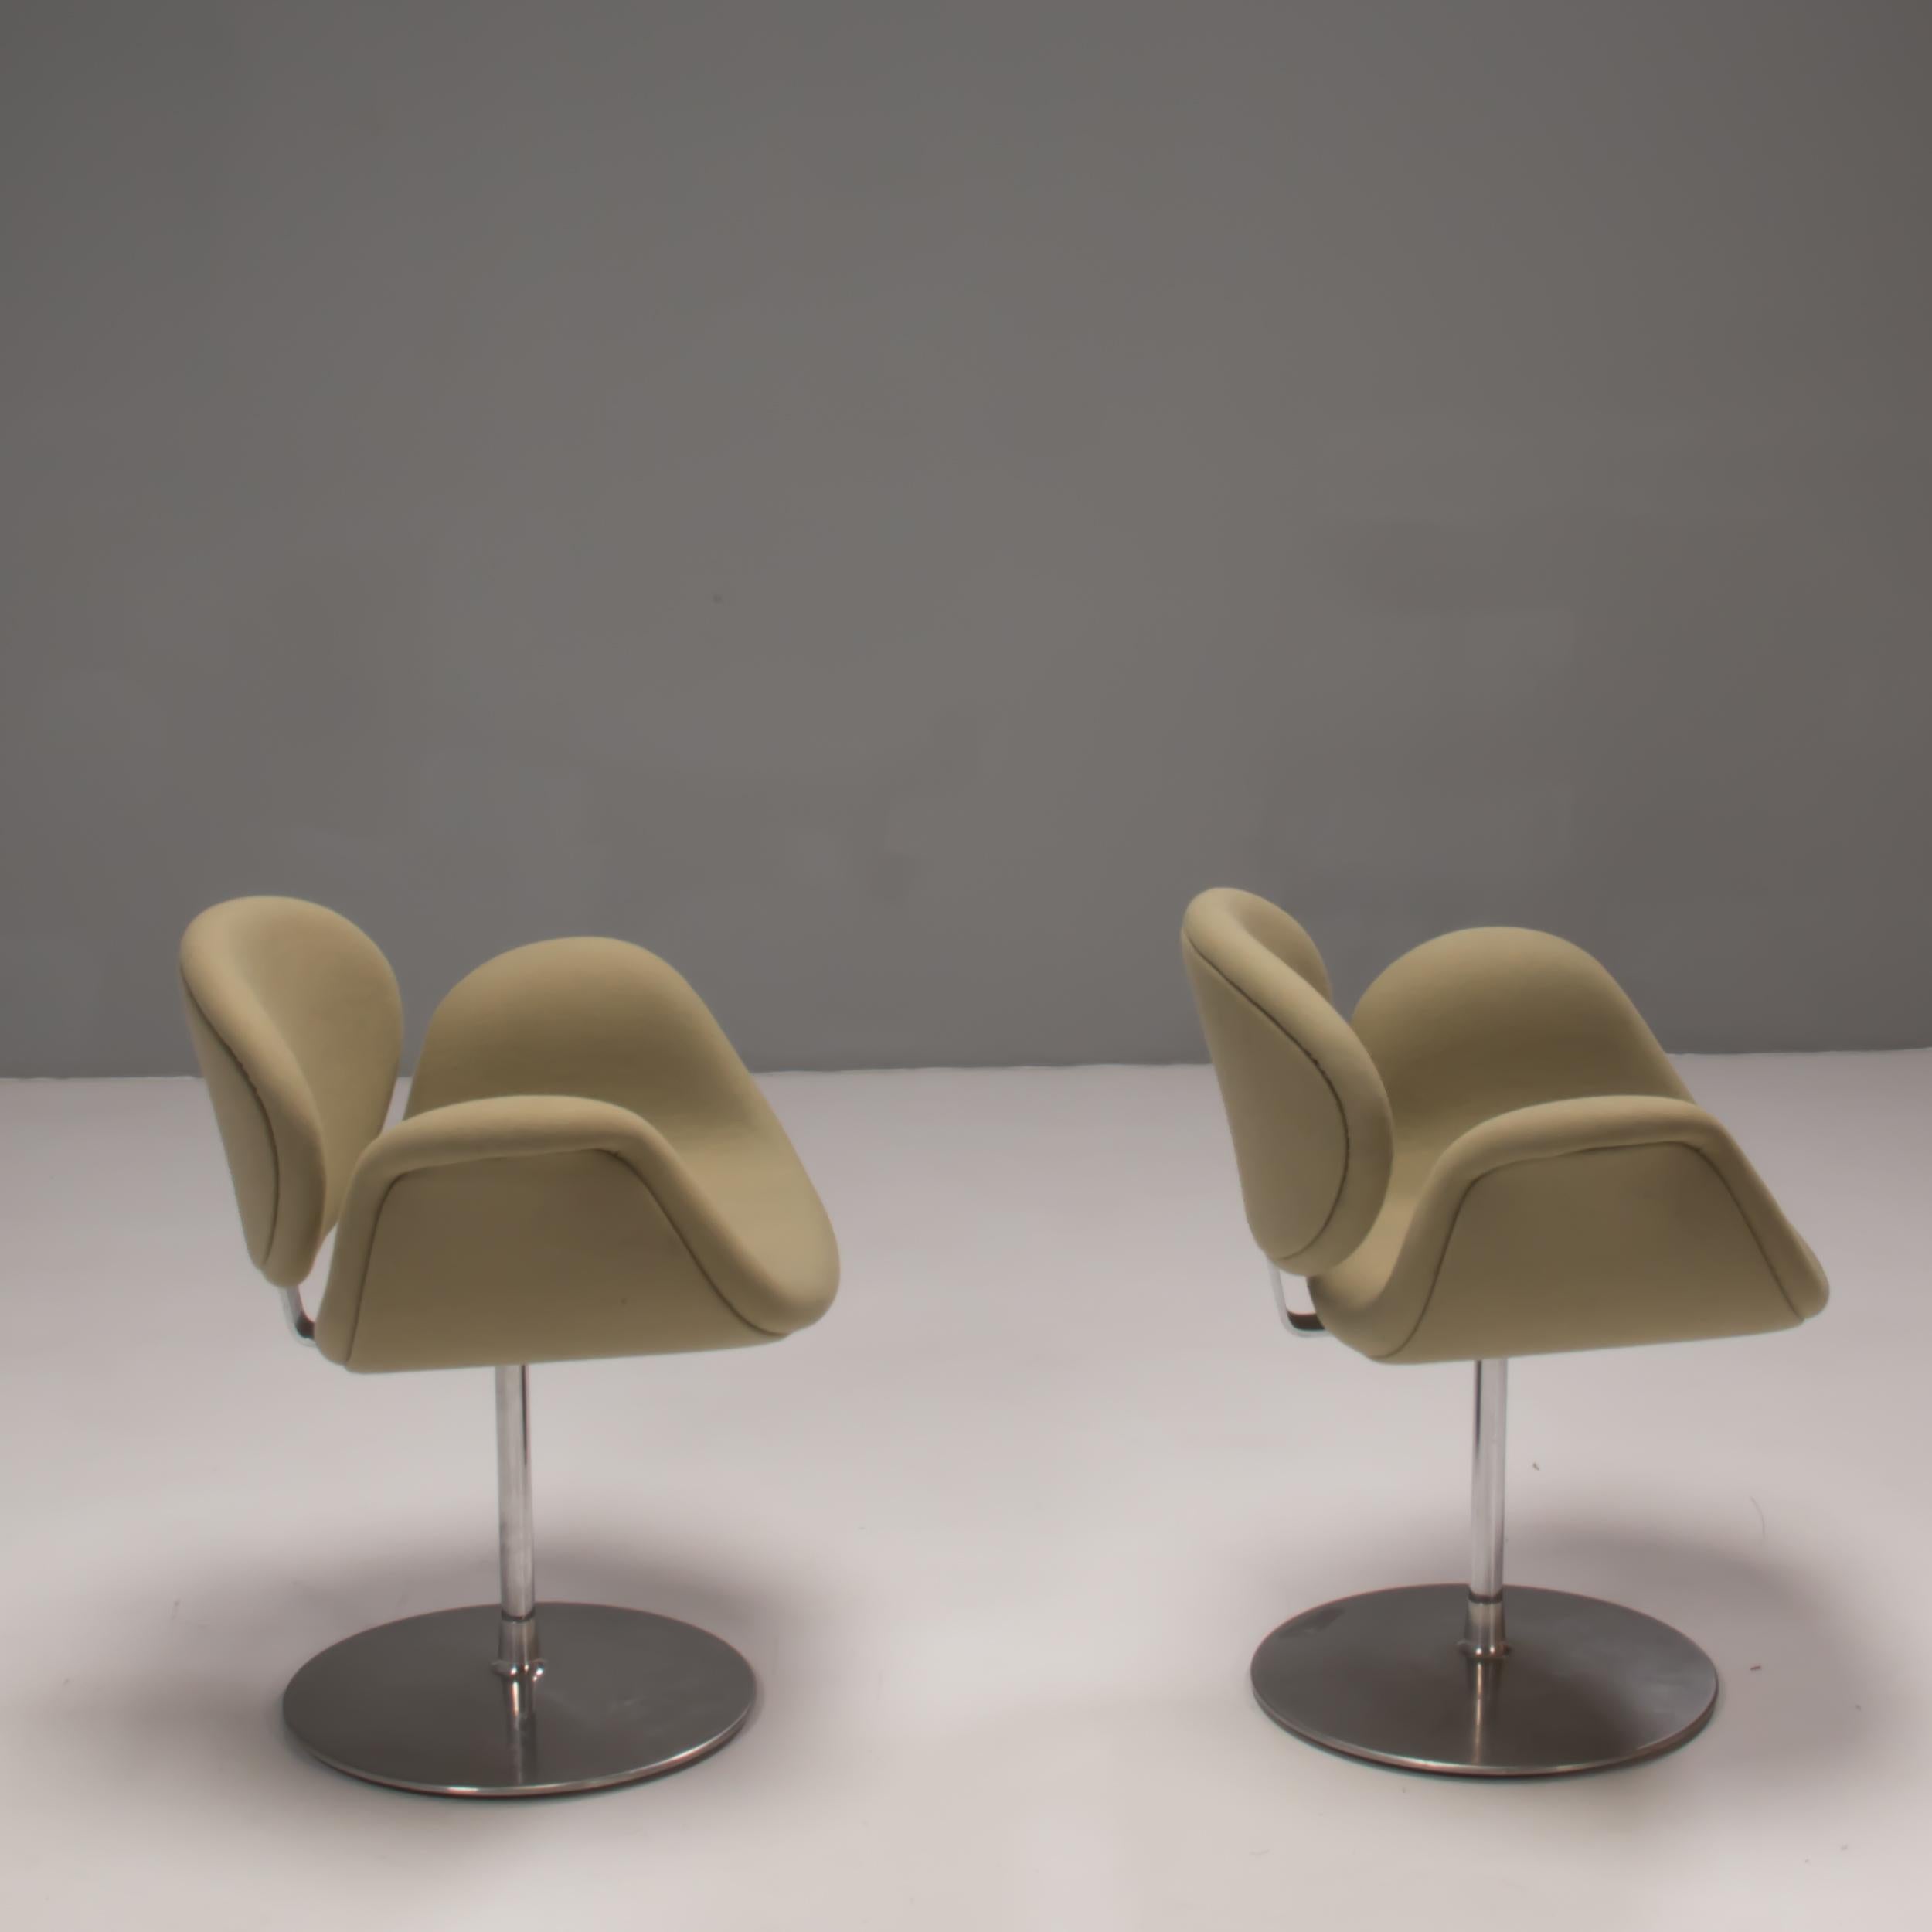 Conçue à l'origine par Pierre Paulin en 1965, la chaise Little Tulip est une icône du design.

Inspirée par la fleur, la chaise présente une silhouette de type Silhouette avec une assise en forme de pétale qui s'incurve pour créer des